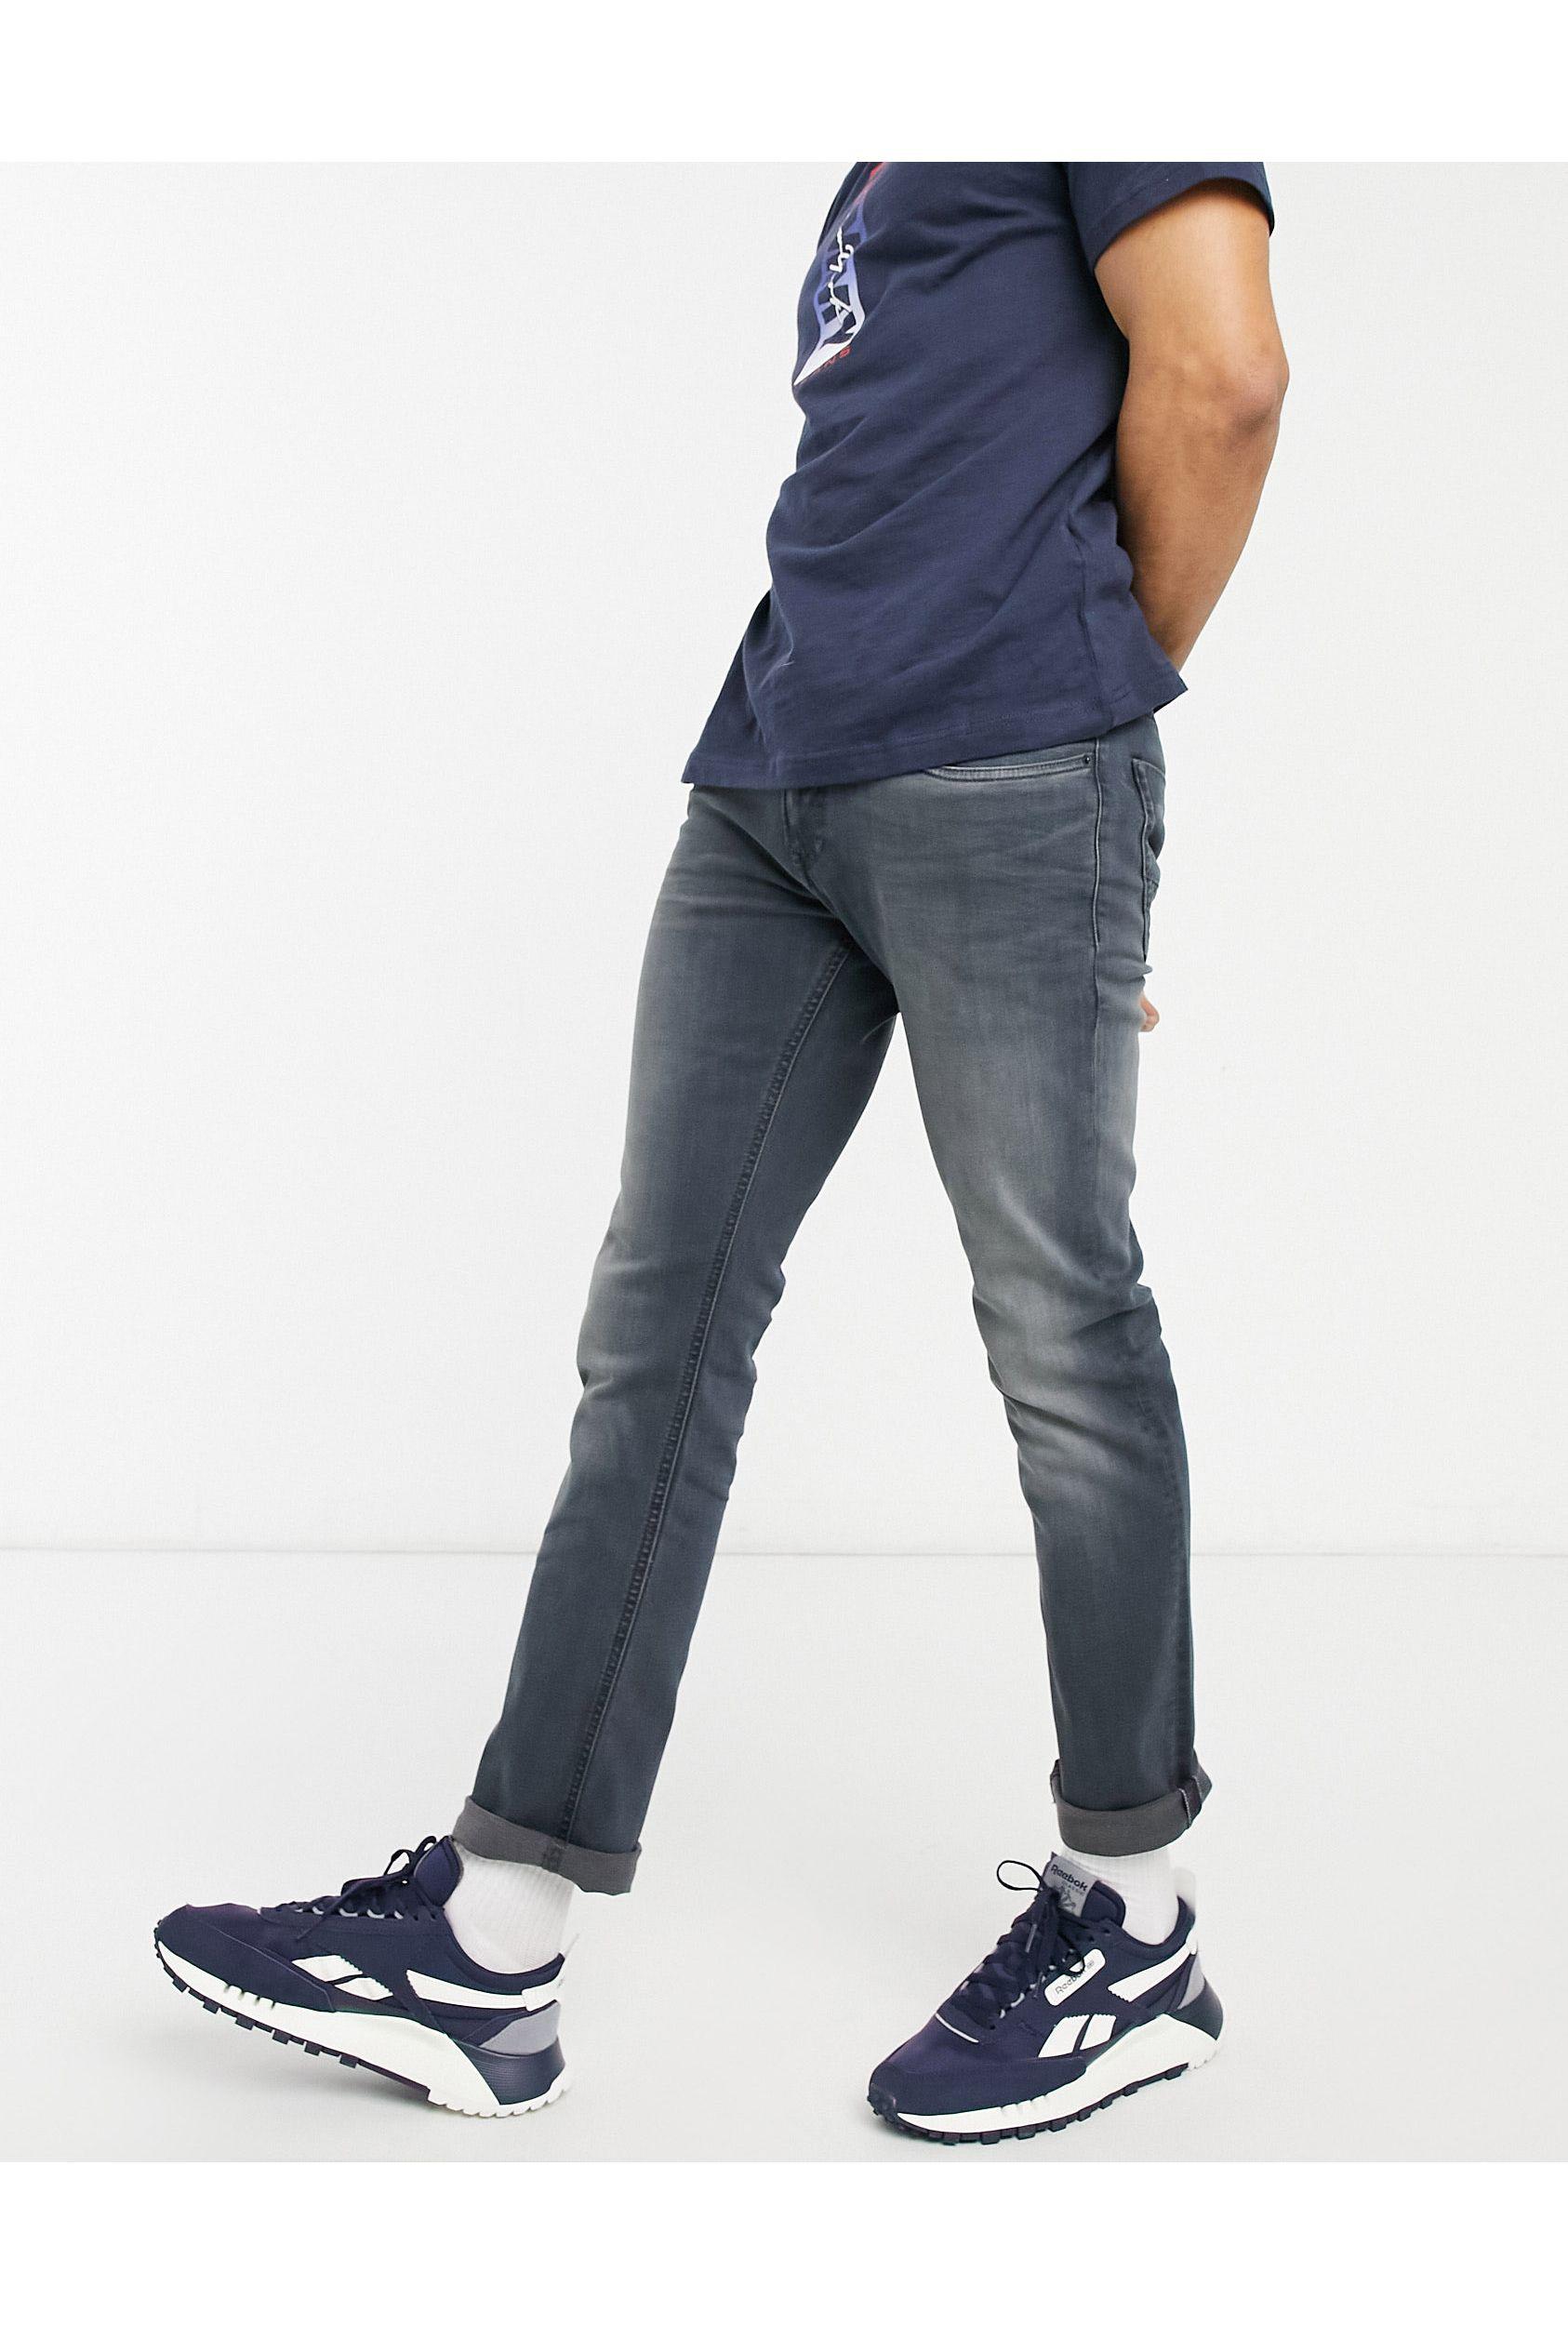 Tommy Hilfiger Denim Scanton Slim Fit Jeans in Blue for Men - Lyst